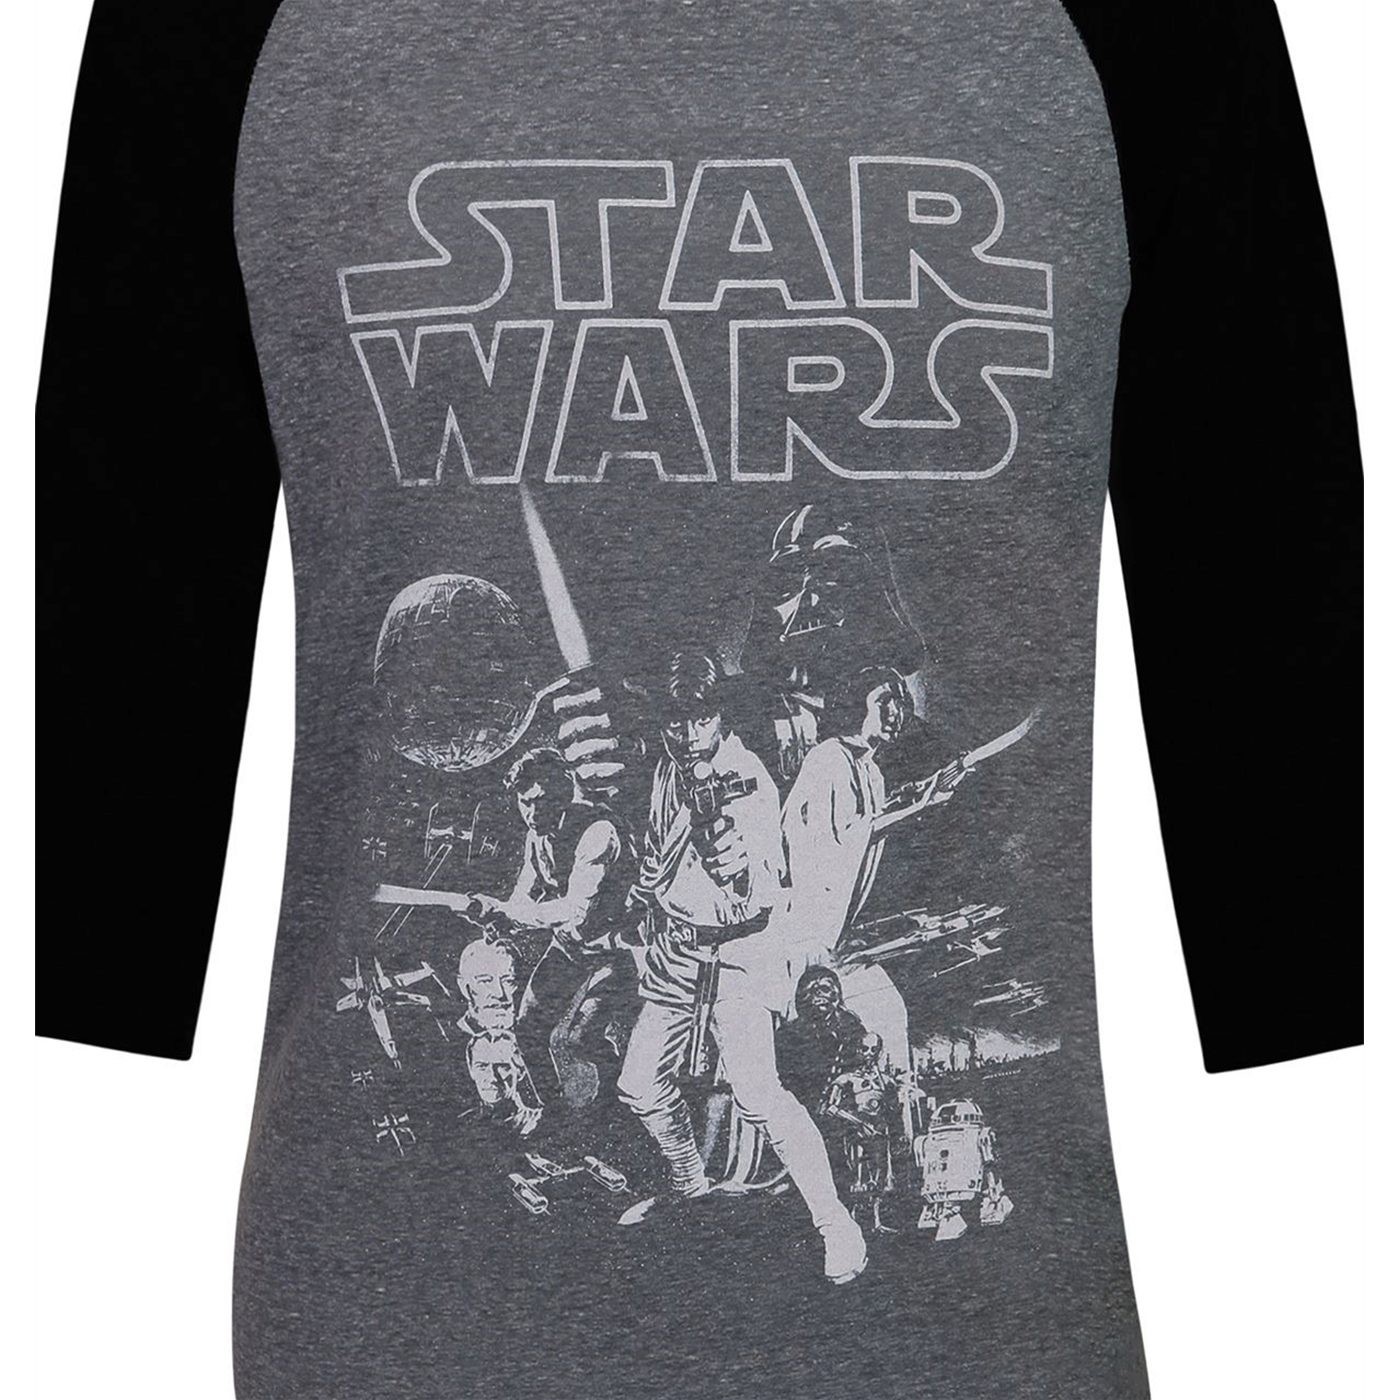 Star Wars New Hope Poster Men's Baseball T-Shirt